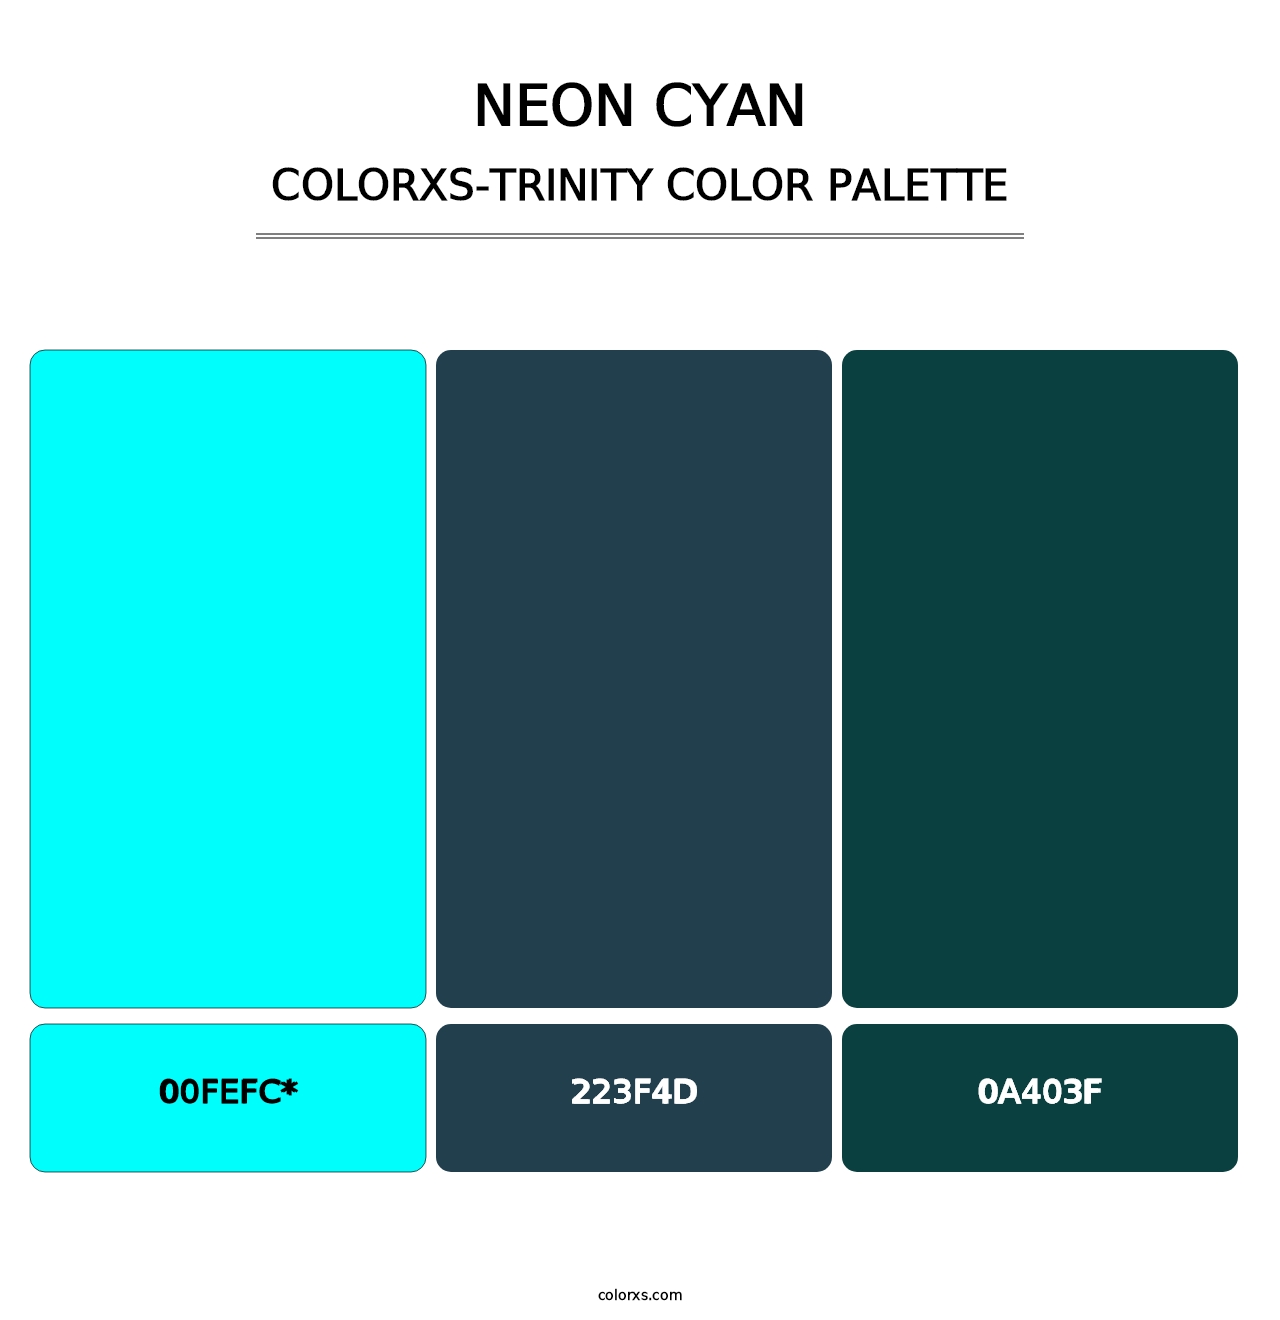 Neon Cyan - Colorxs Trinity Palette